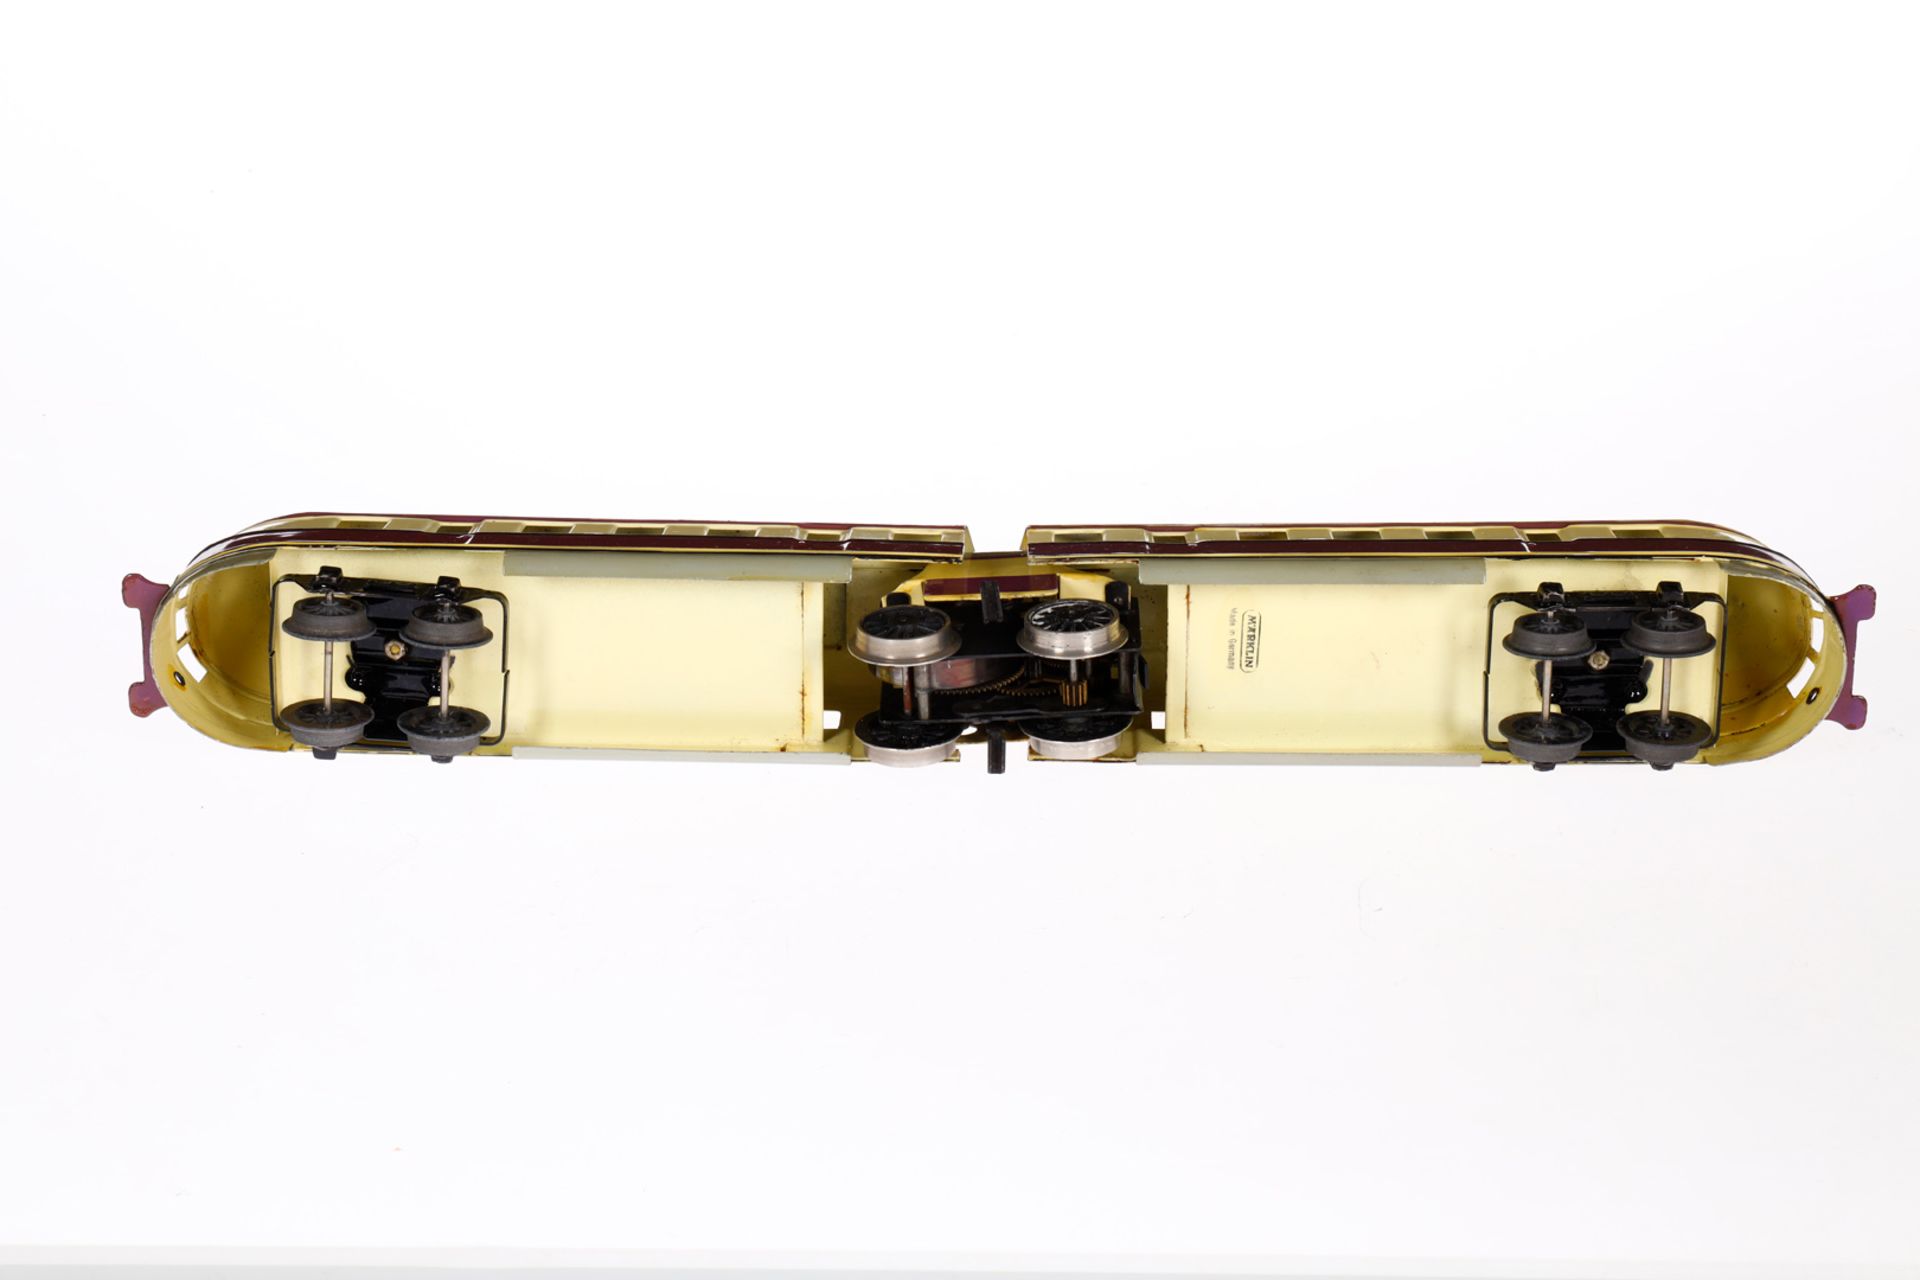 Märklin Triebwagen TW 970, Spur 0, Uhrwerk intakt, creme/violett, LS tw ausgeb., gealterter Lack, im - Bild 4 aus 4